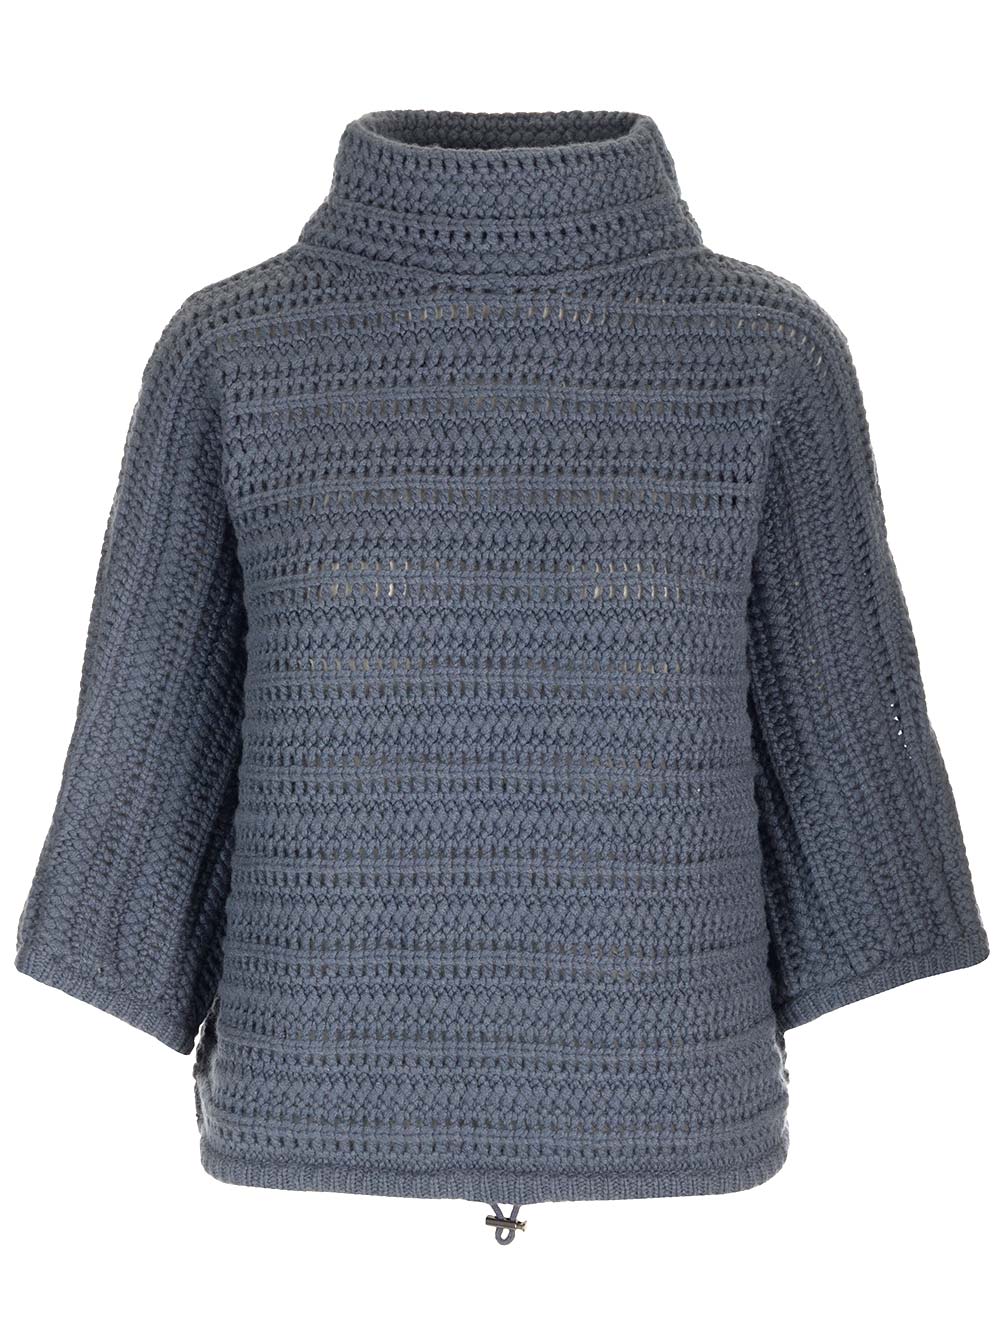 Brunello Cucinelli Crochet Cashmere Sweater